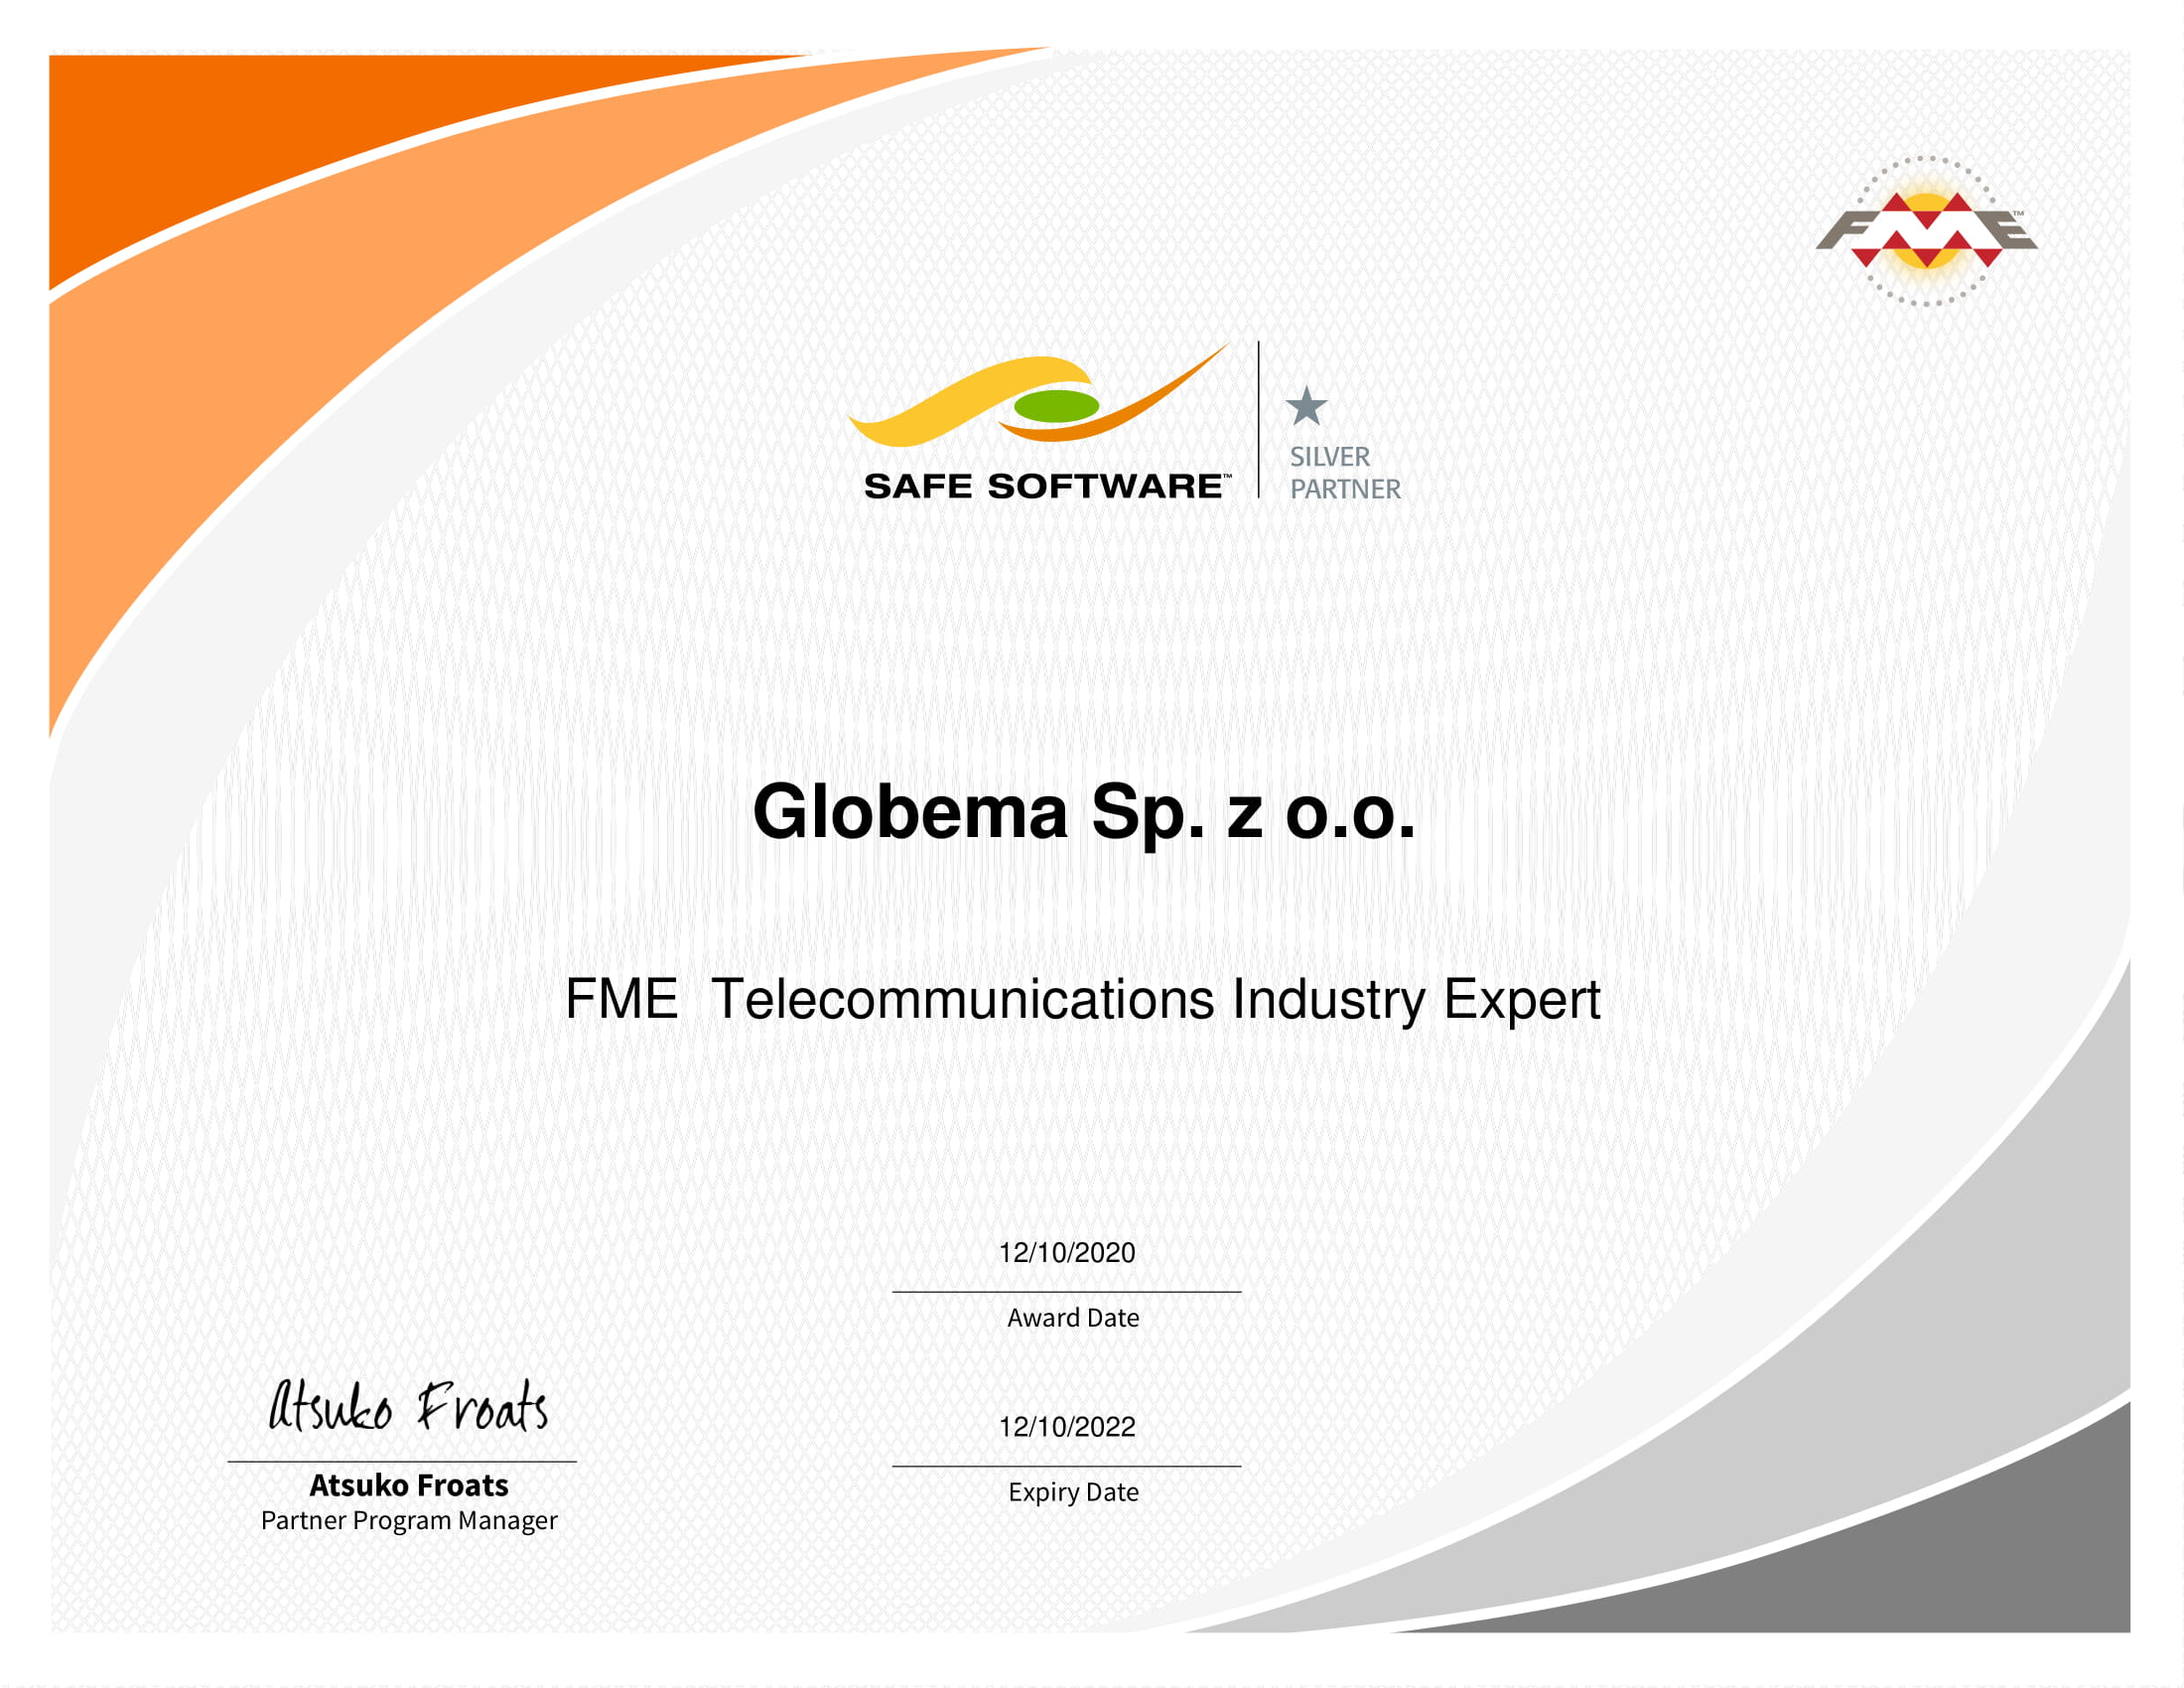 Globema - Telecommunications